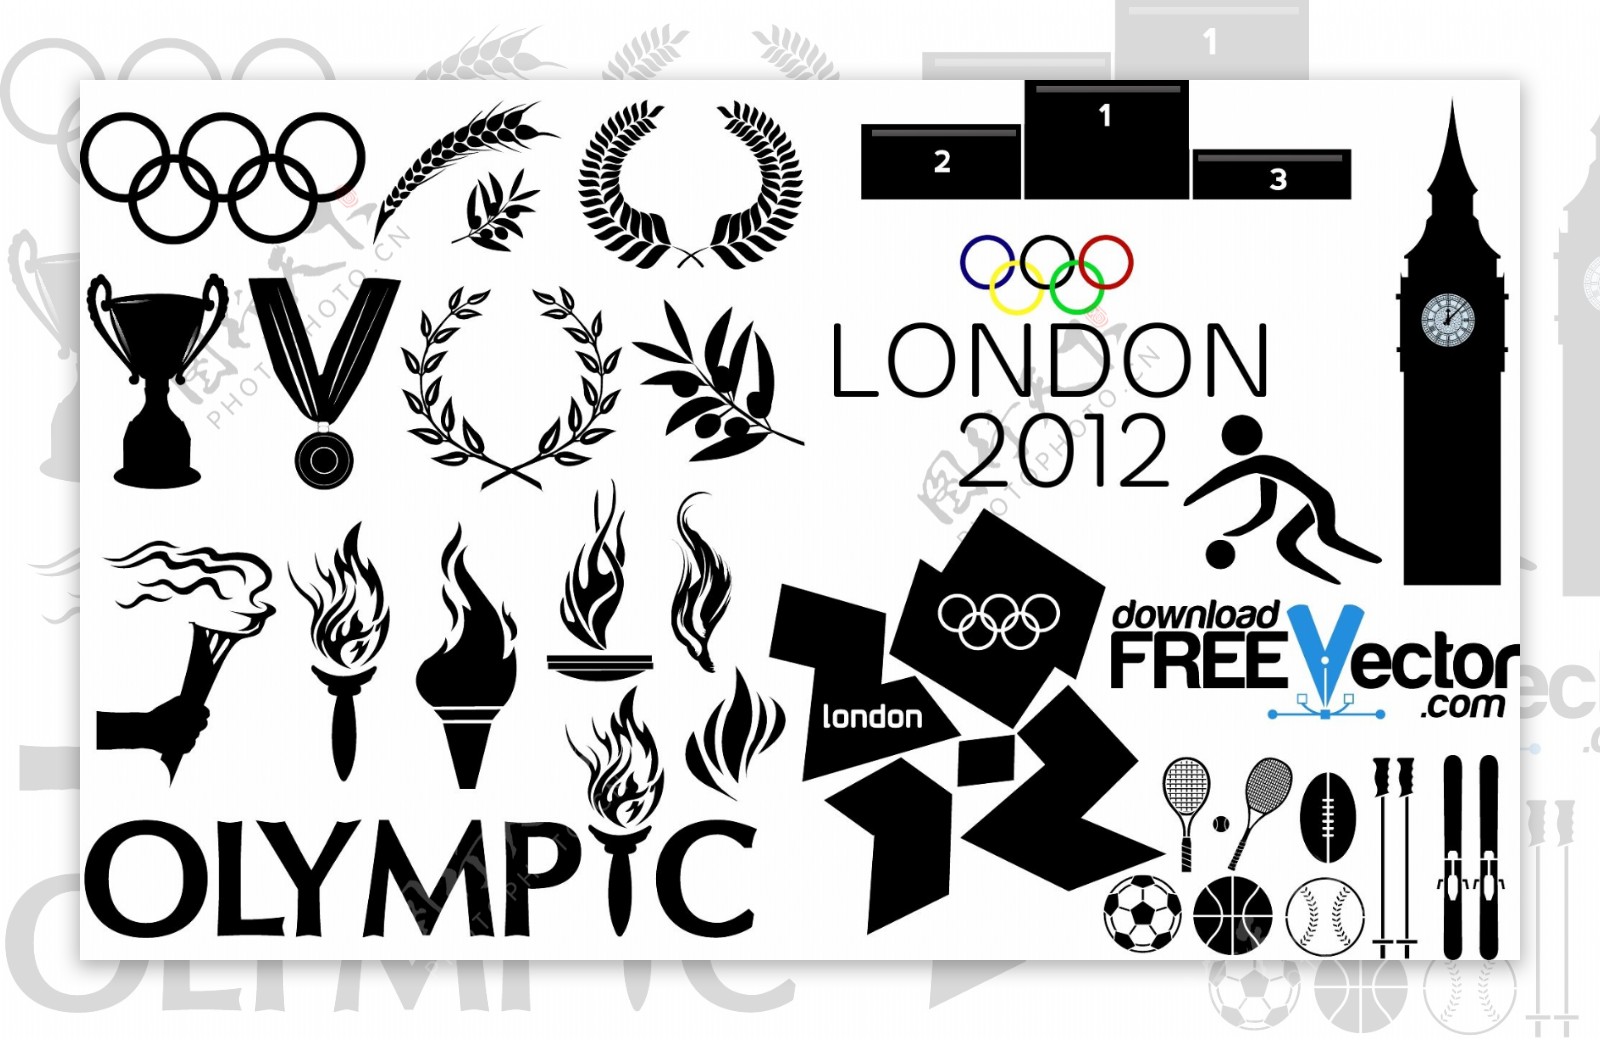 奥运标志